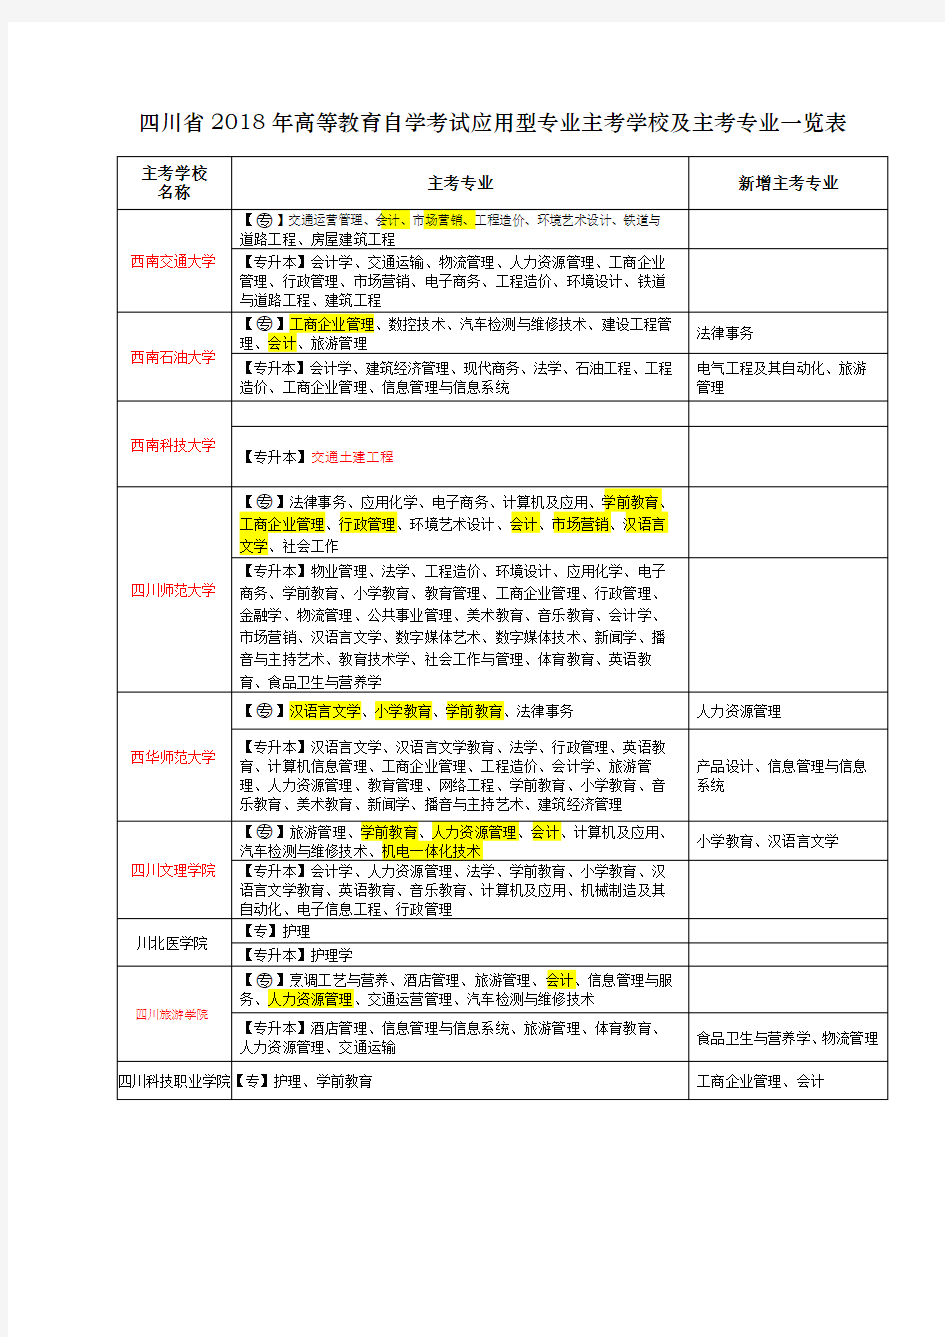 四川省2018年高等教育自学考试应用型专业主考学校及主考专业一览表【模板】